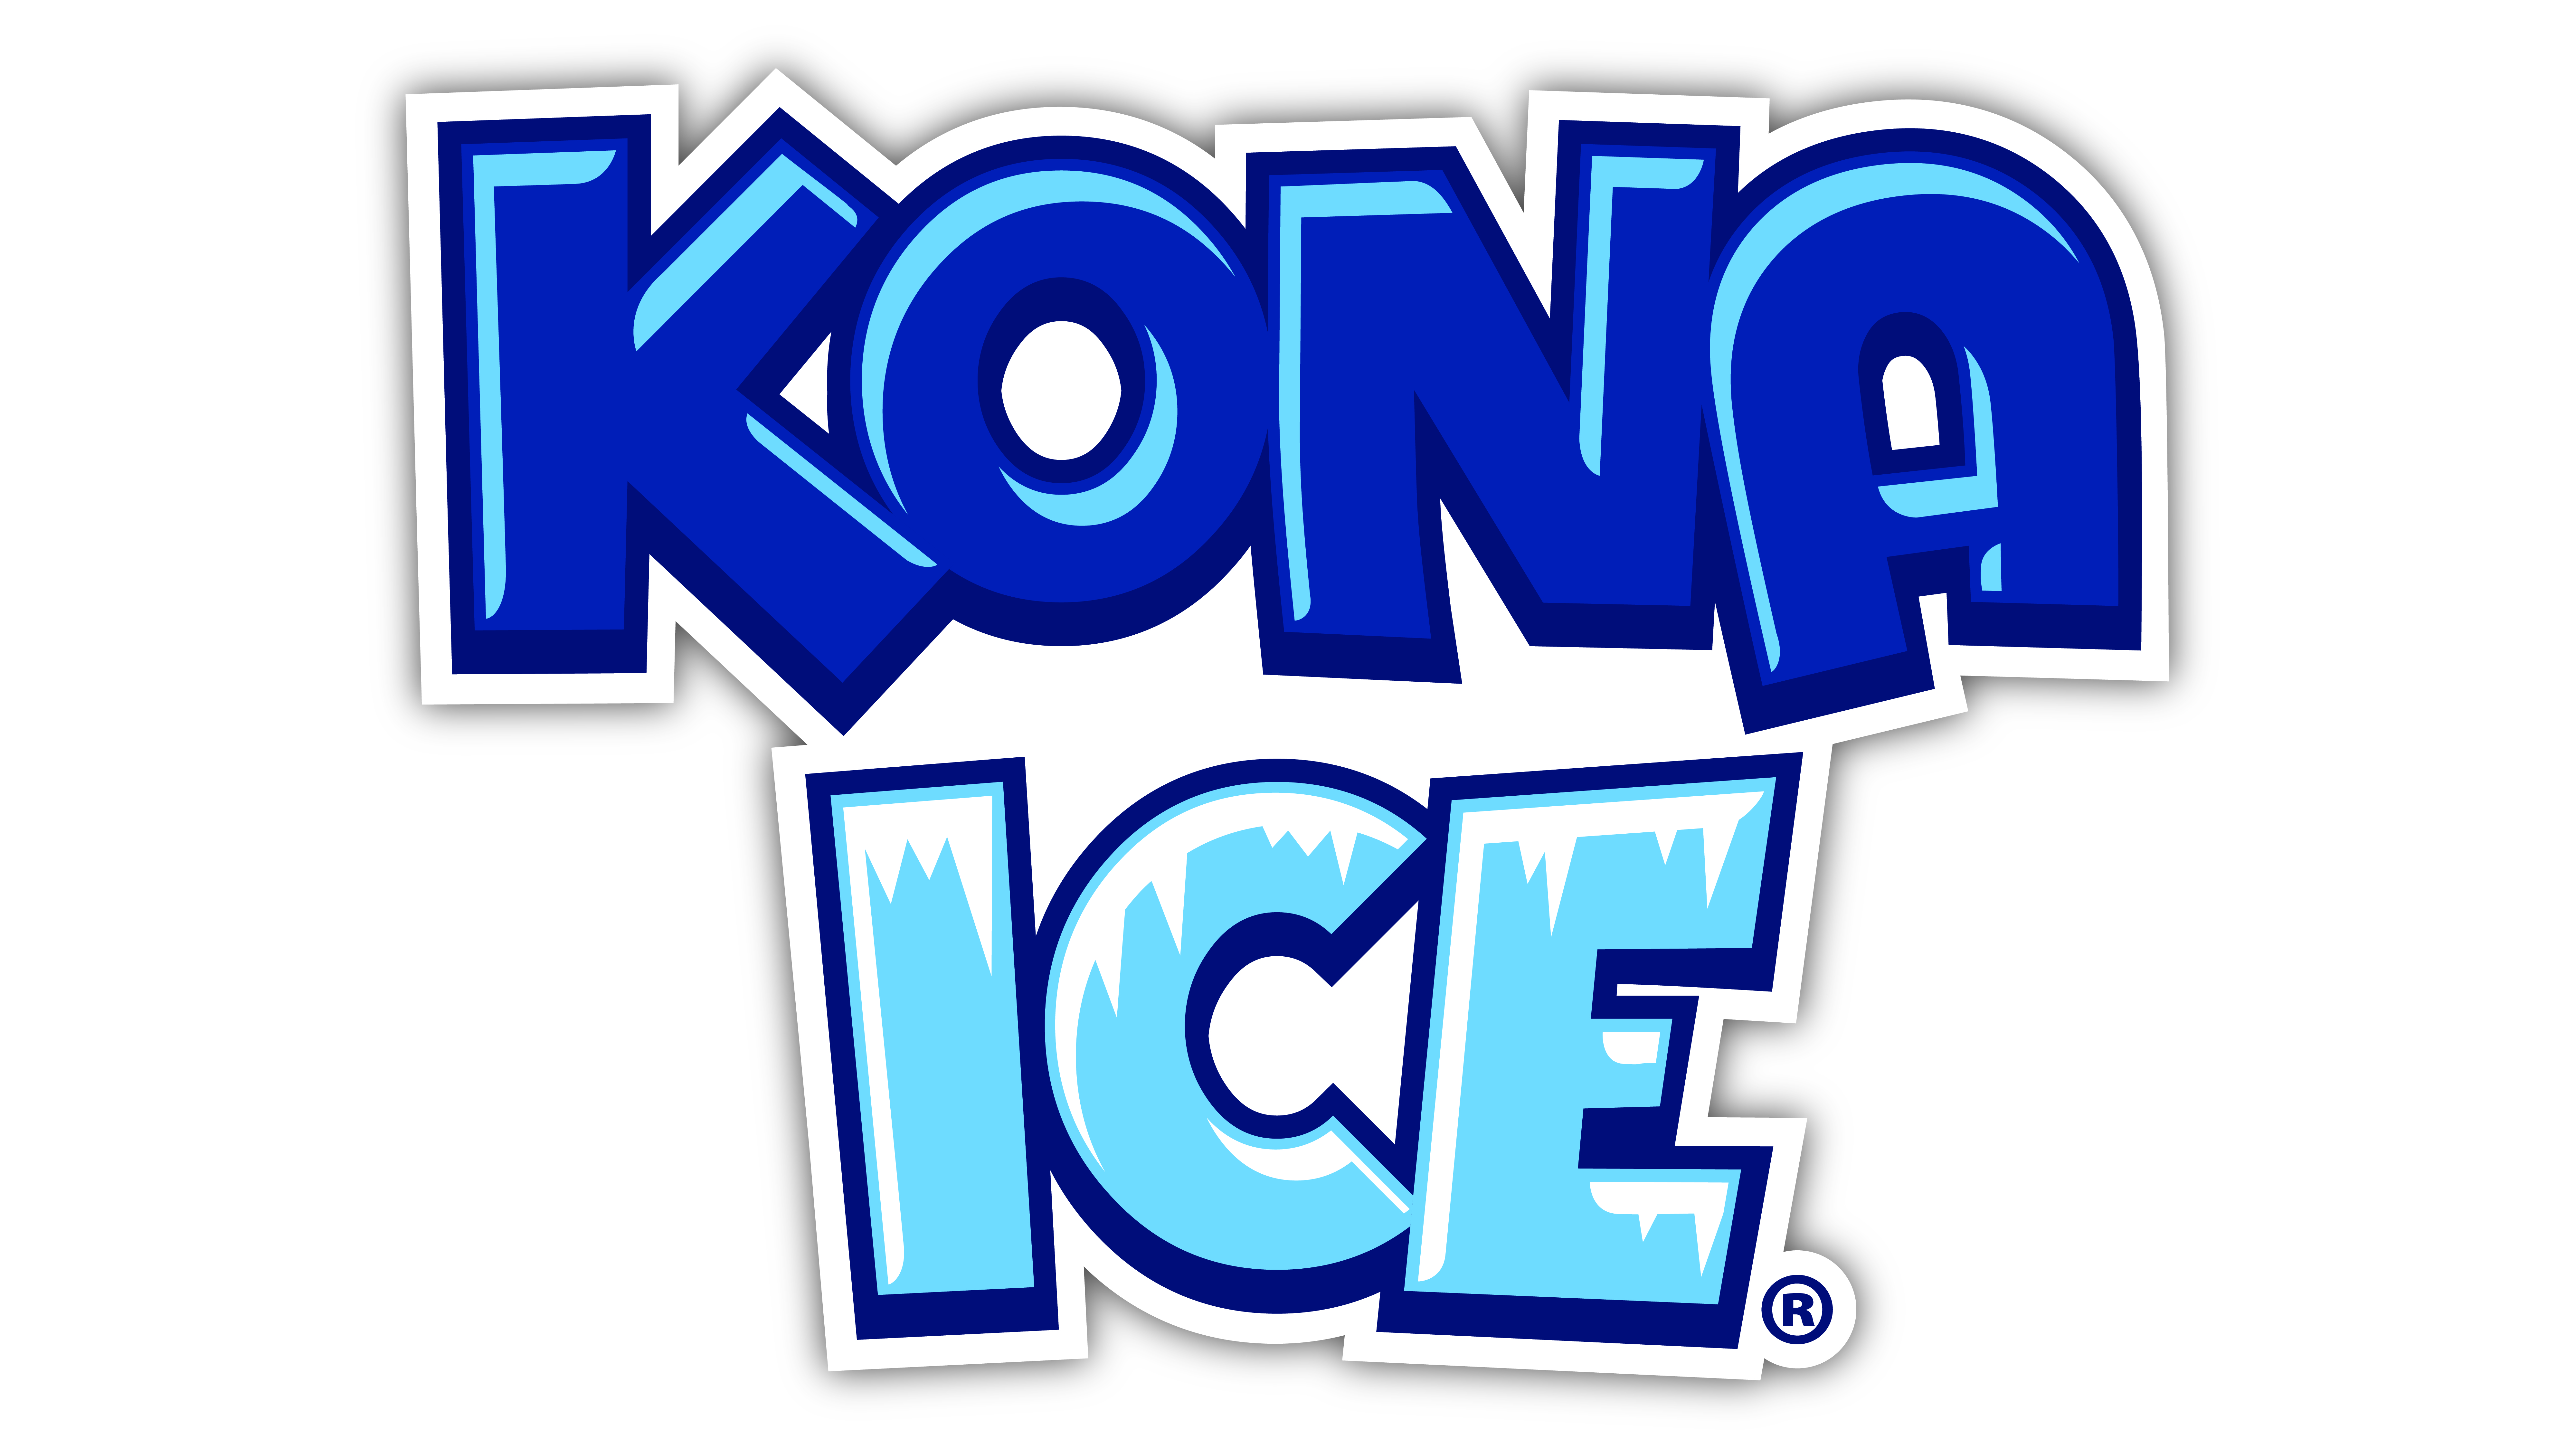 Kona Ice of Monona